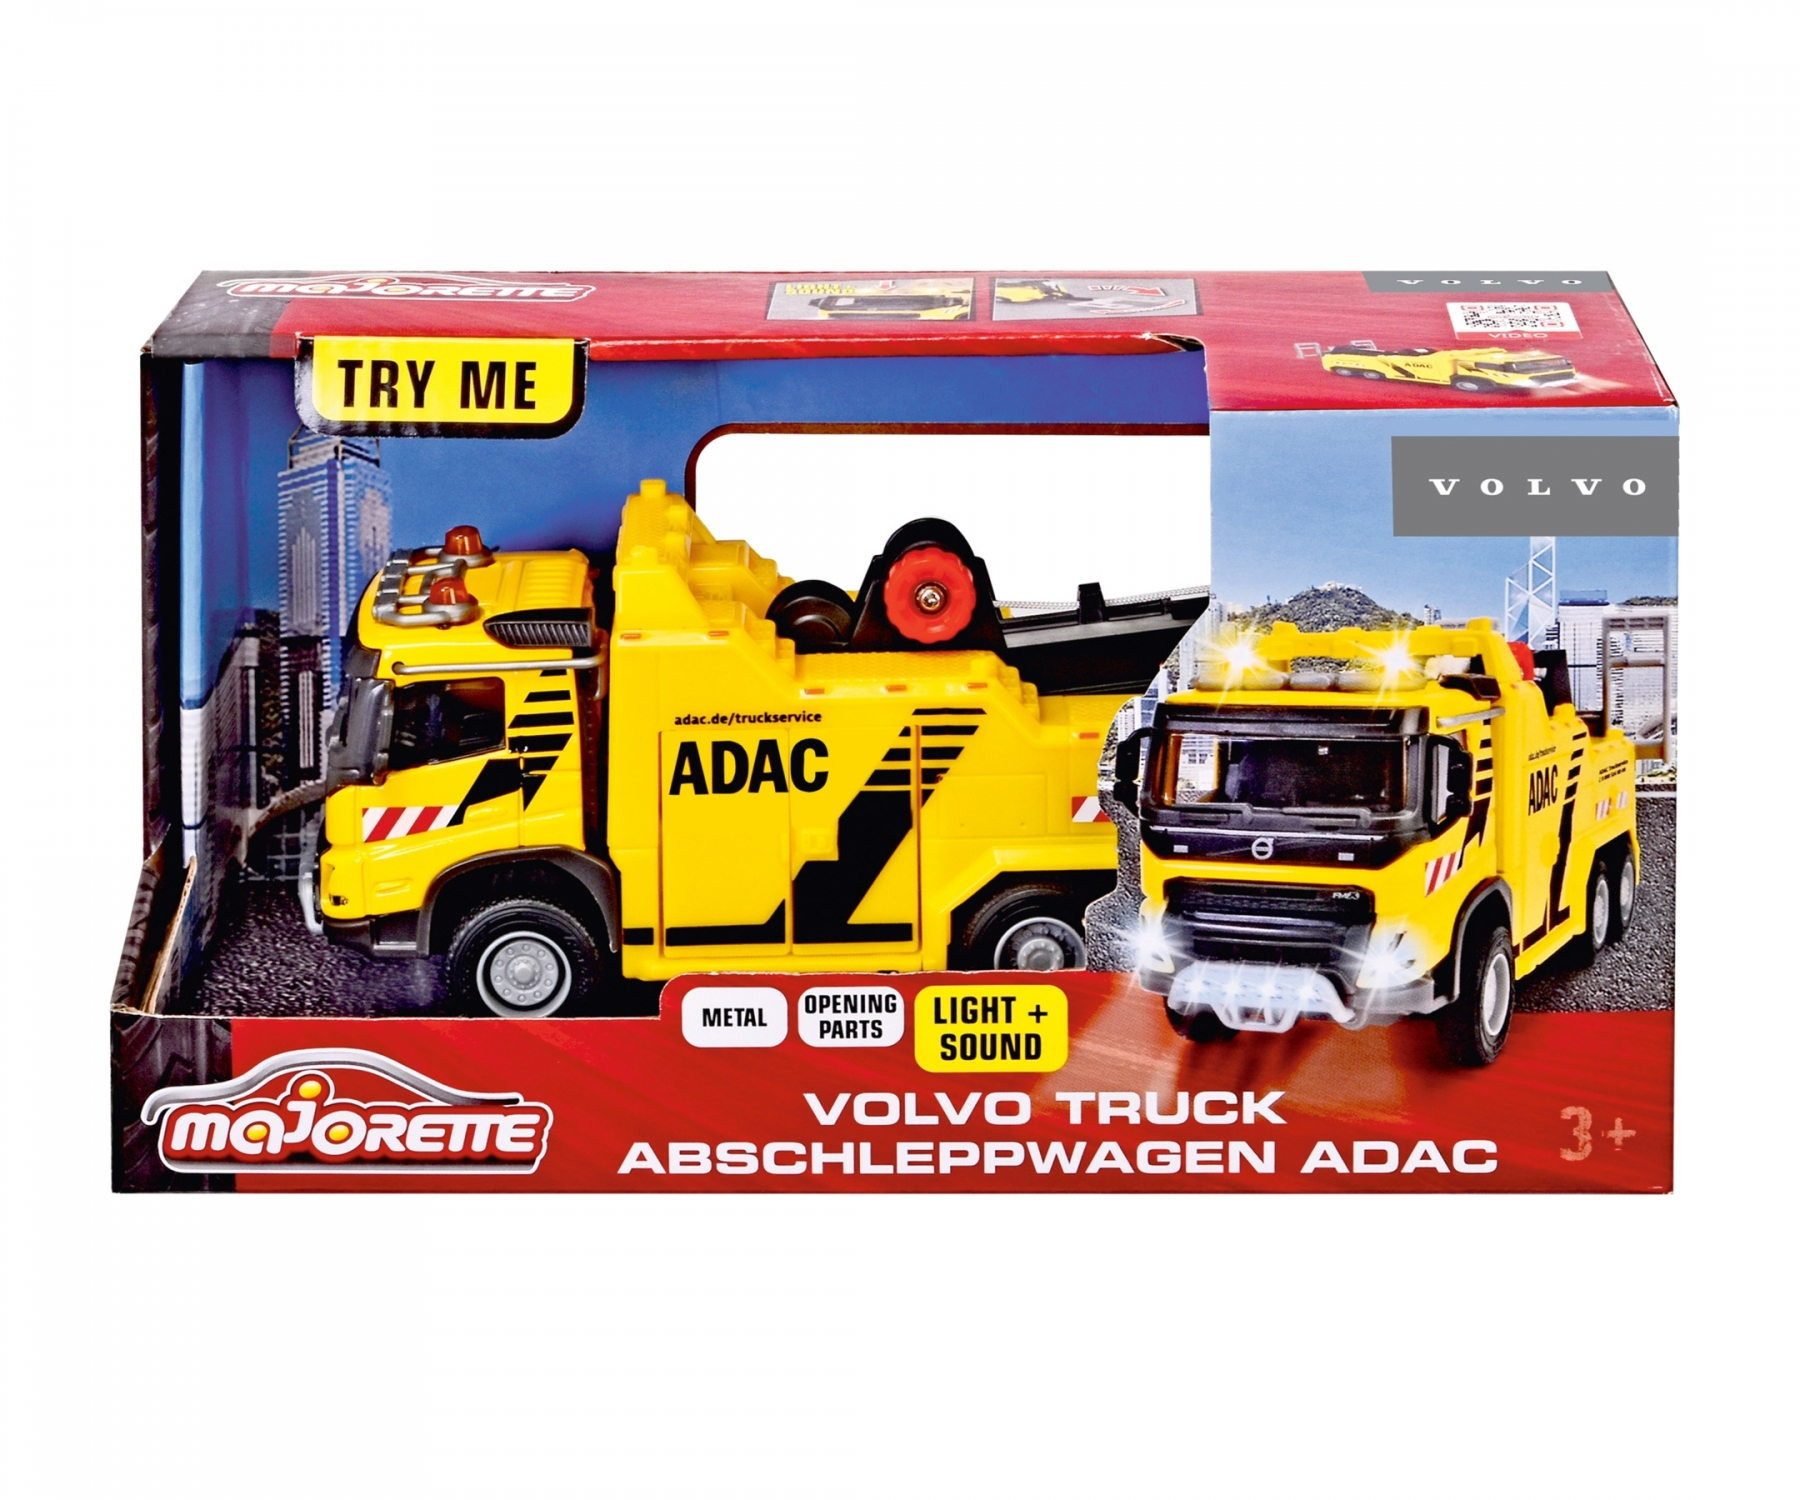 majORETTE Spielzeug-Auto Majorette Spielzeugauto Sadt Volvo Truck Abschleppwagen ADAC 213743002